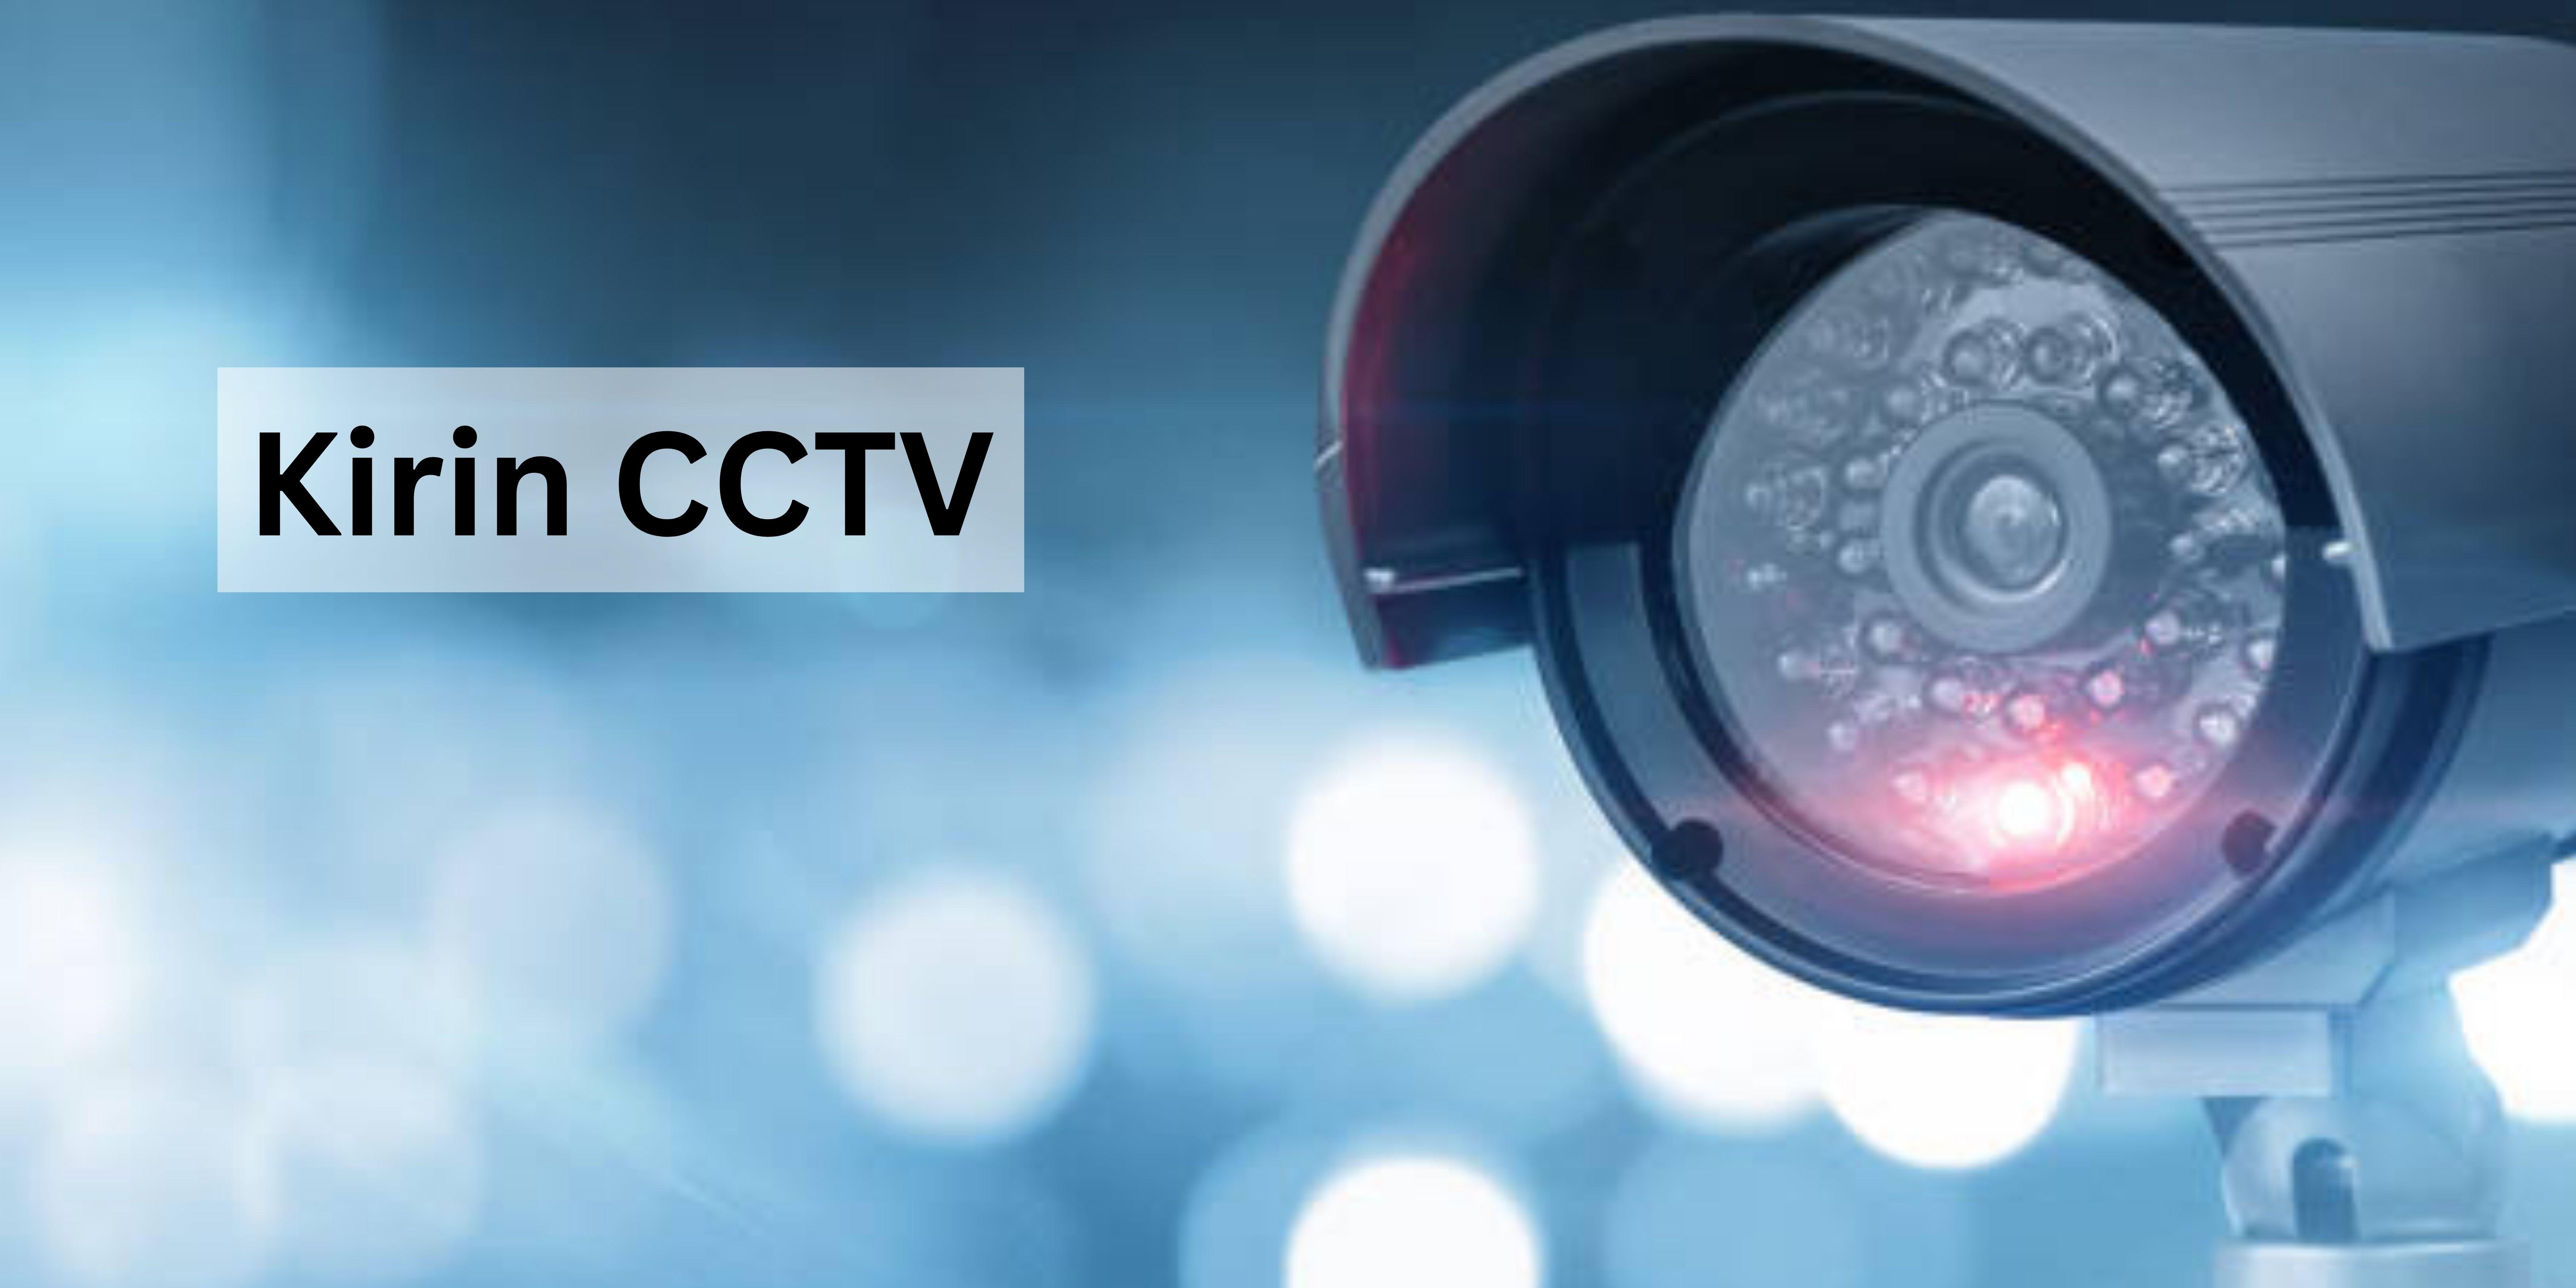 Kirin CCTV